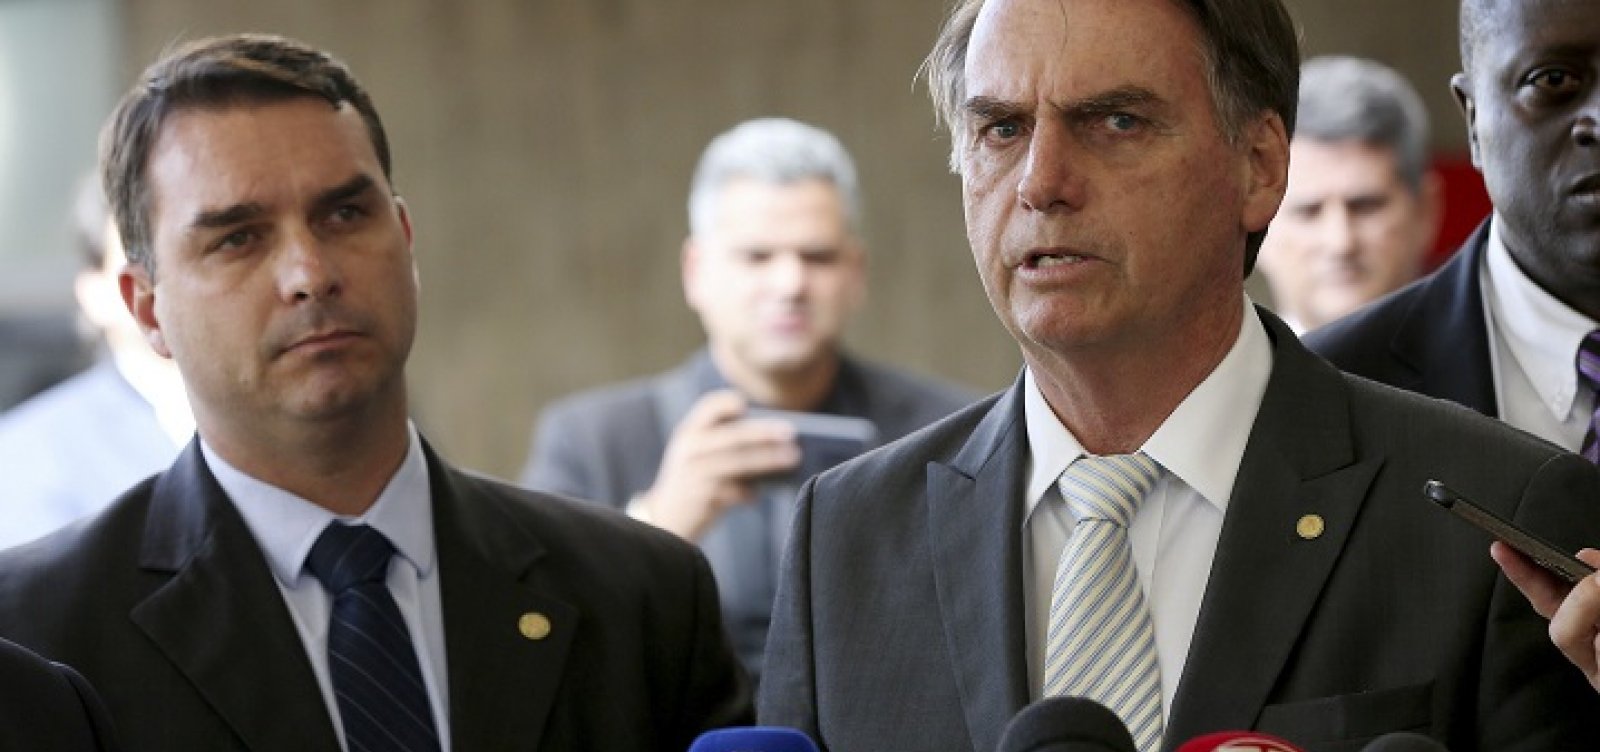 Flávio Bolsonaro diz que MP cria 'atalho' e 'burla' regras ao apurar denúncias  